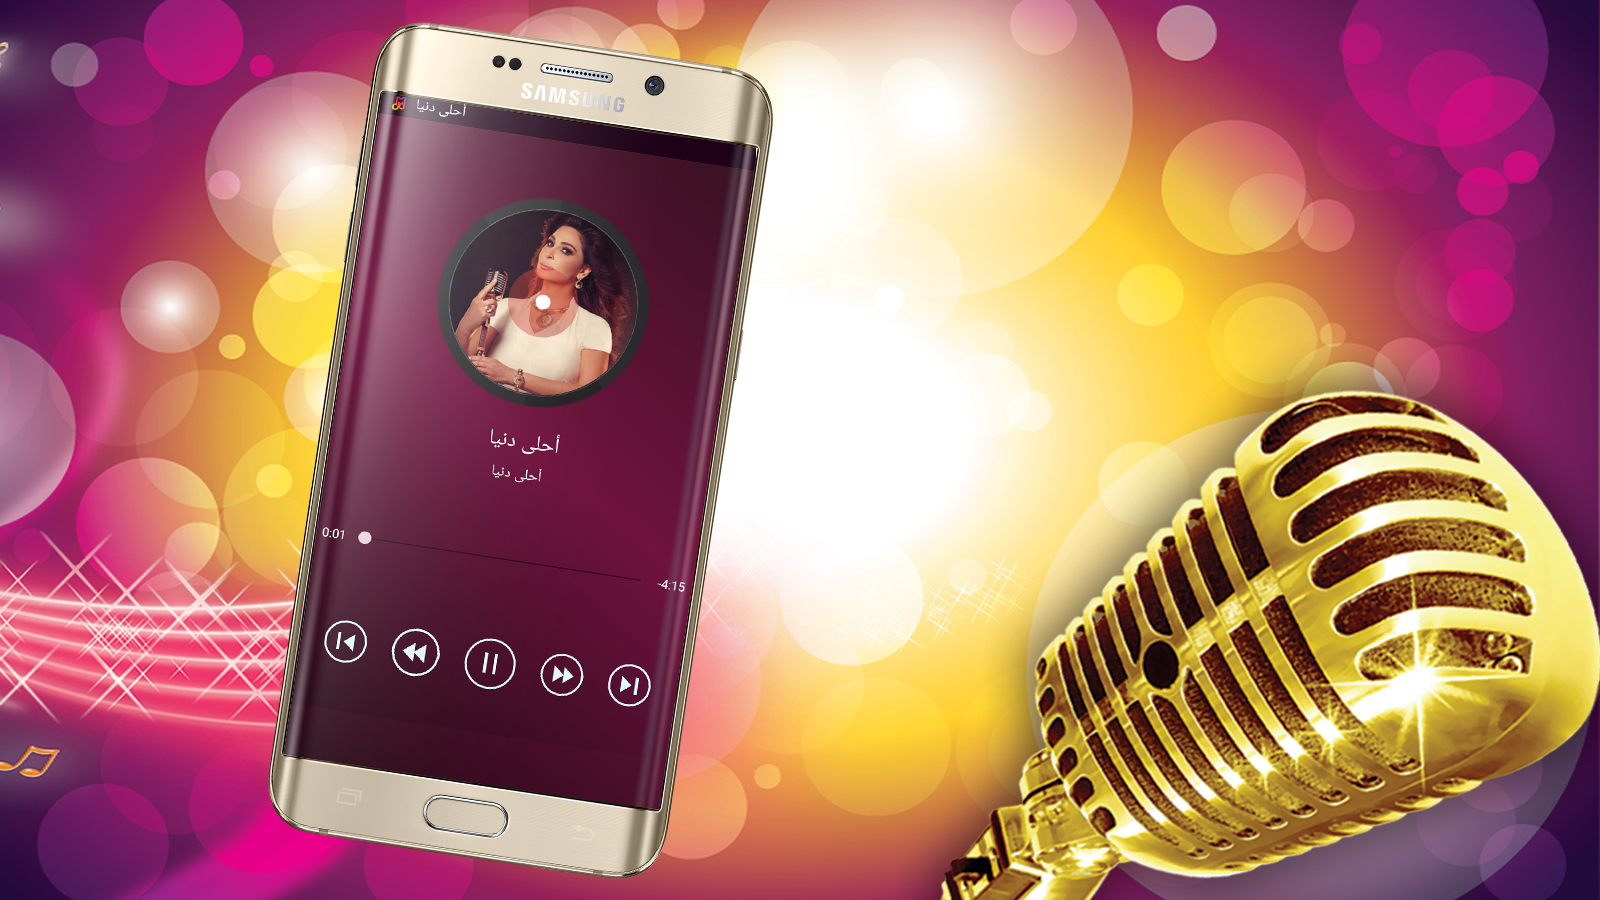 اغاني اليسا بدون انترنت Elissa Khoury 1 0 Apk Download Android